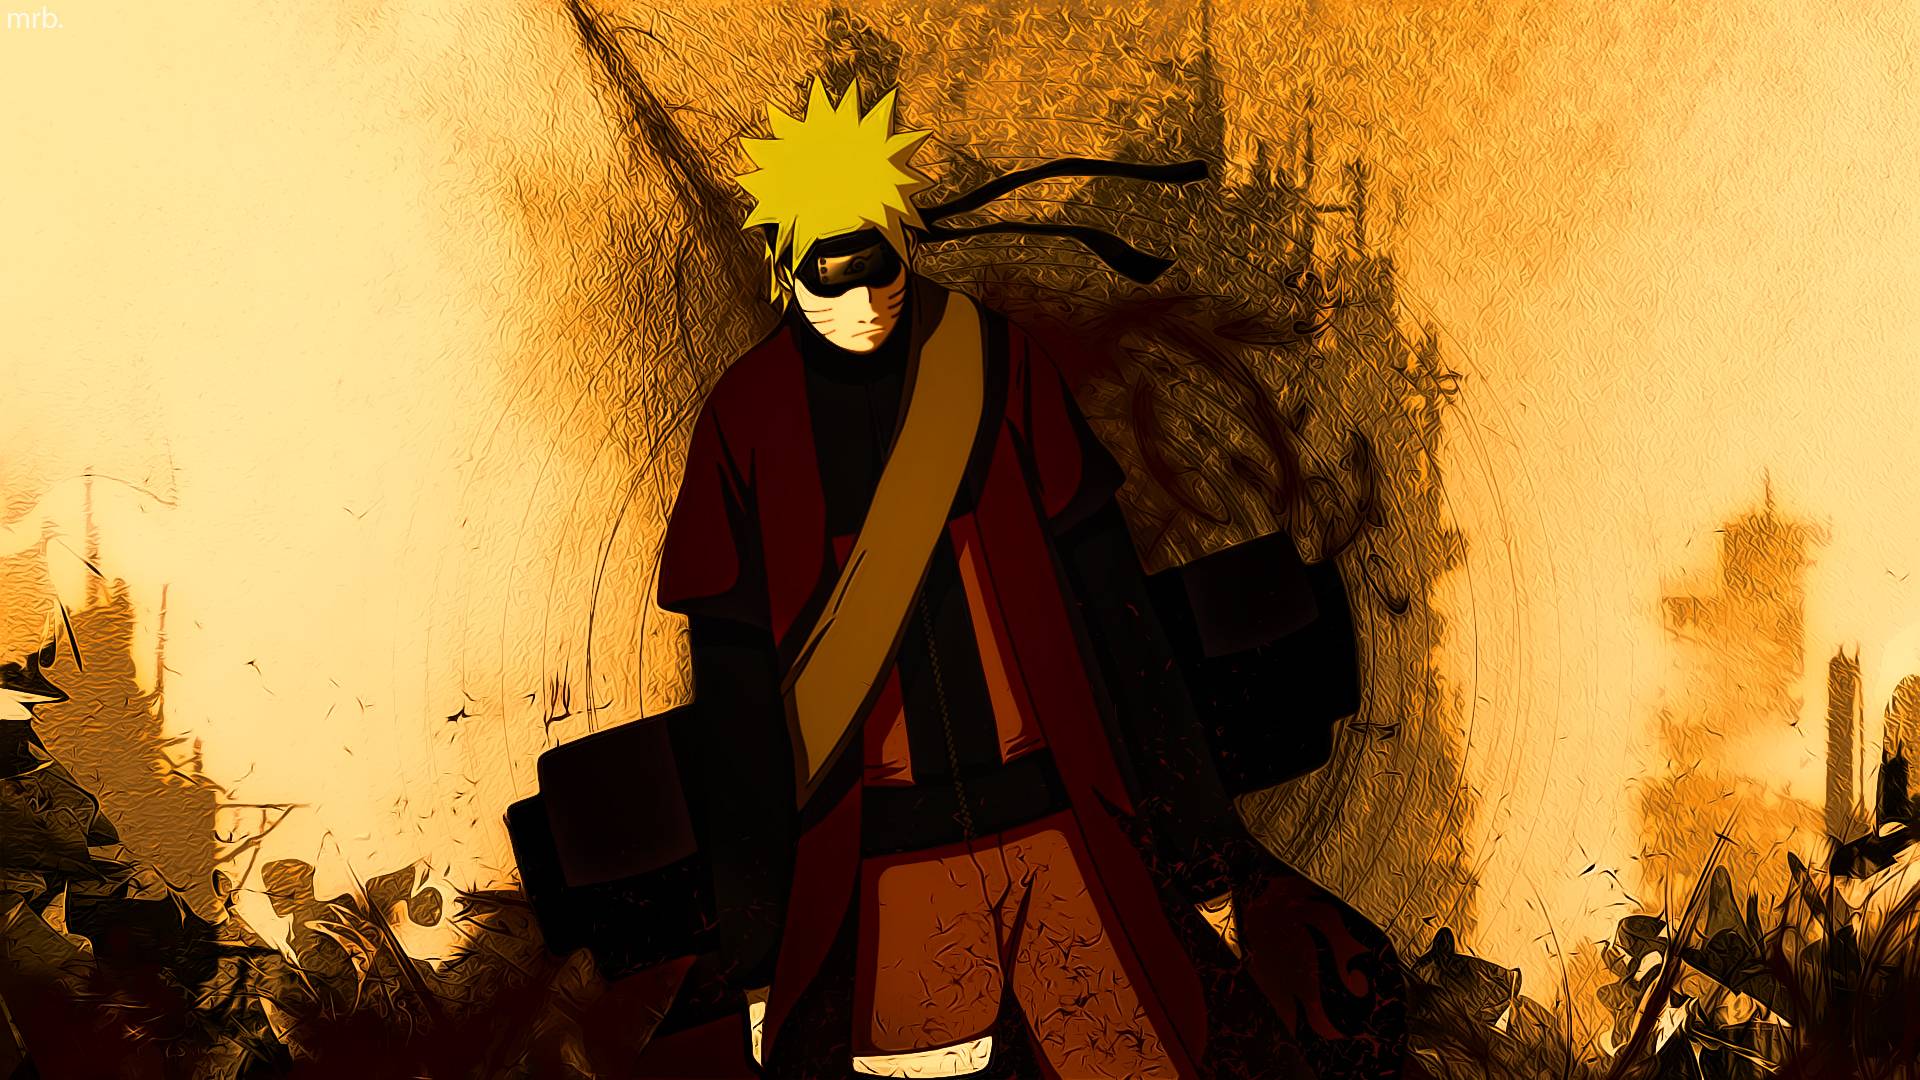 Naruto Abstract Wallpapers: Những tác phẩm nghệ thuật trừu tượng được lấy cảm hứng từ Naruto sẽ khiến bạn phải trầm trồ kinh ngạc. Với sự pha trộn giữa màu sắc và hình ảnh độc đáo, chắc chắn sẽ không có điều gì tuyệt vời hơn khi nhìn vào màn hình máy tính của bạn.